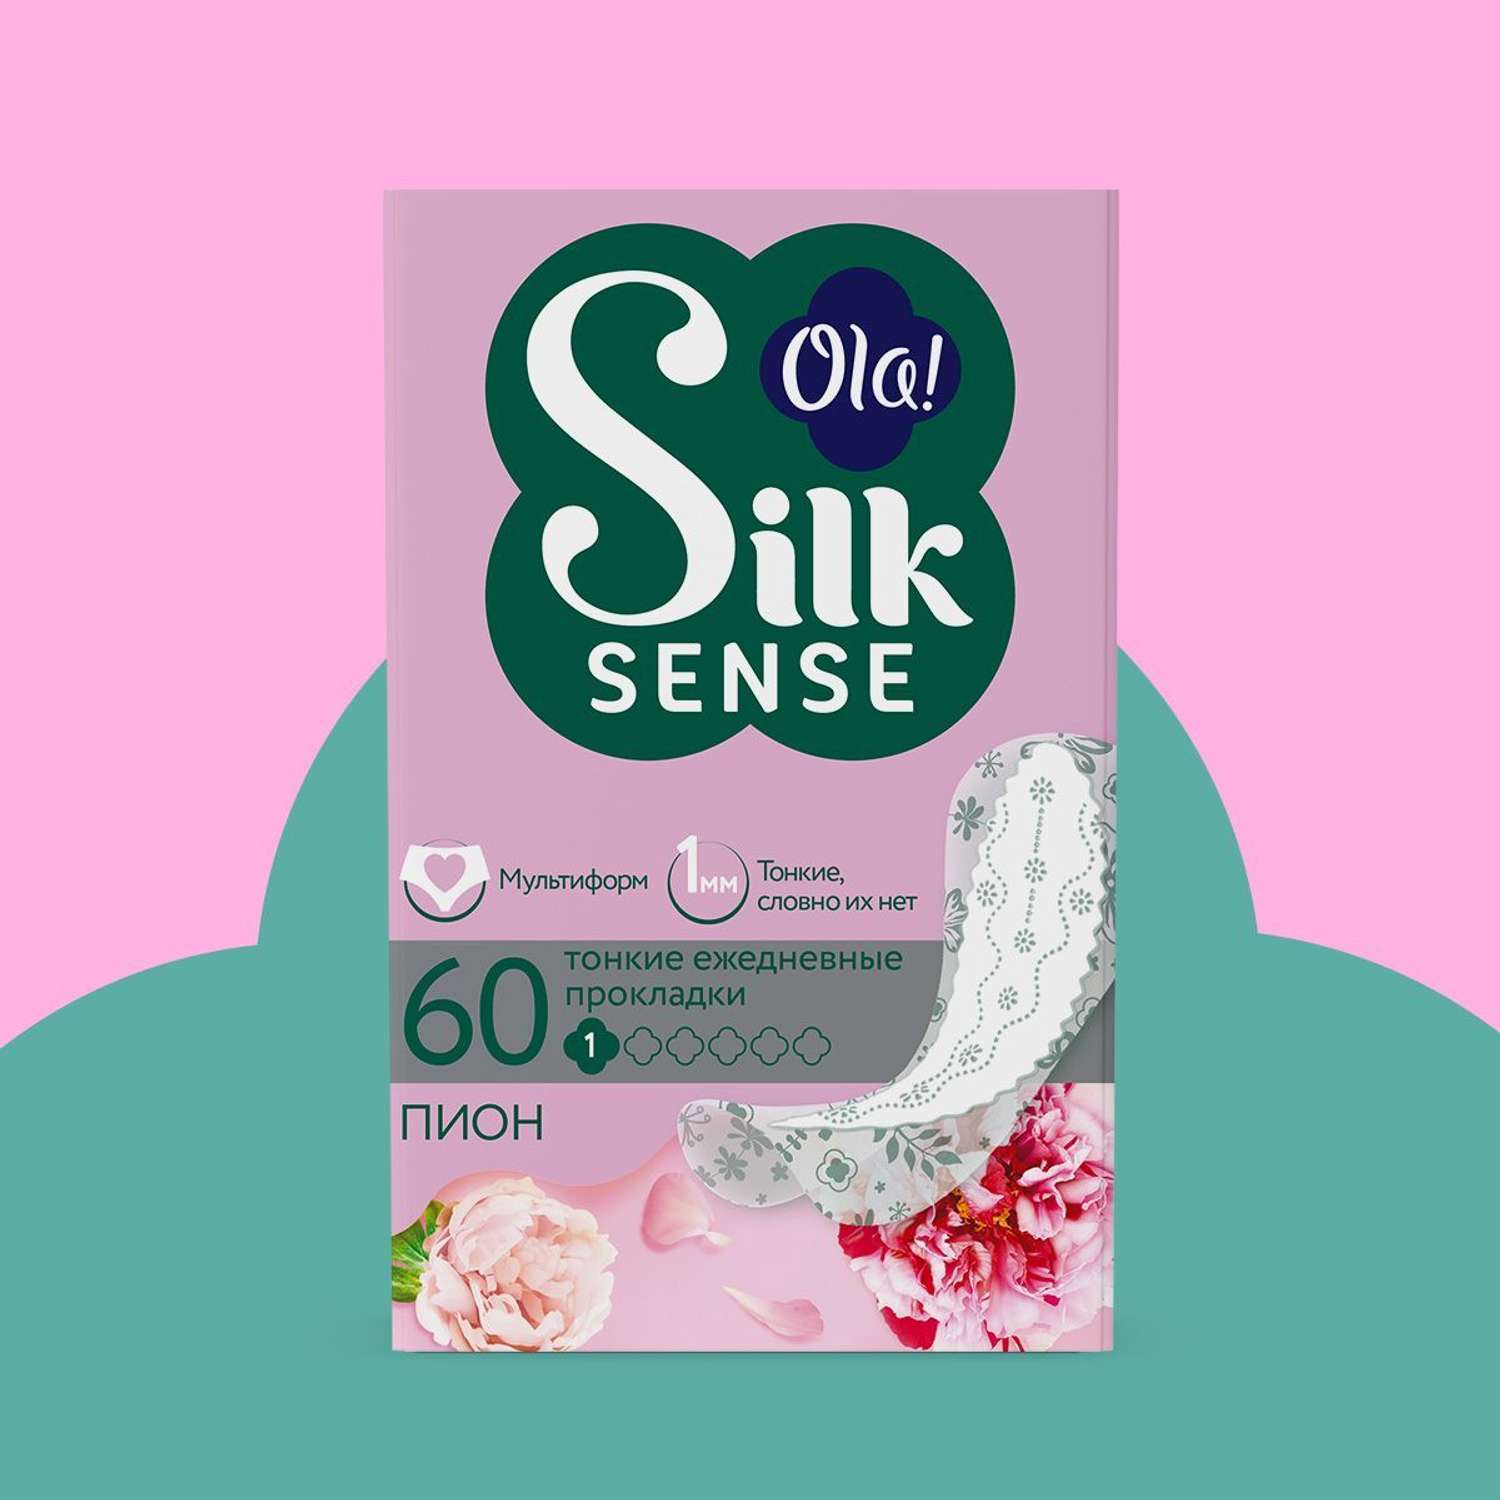 Ежедневные прокладки Ola! Silk Sense Light ультратонкие аромат Белый пион 60 шт - фото 2